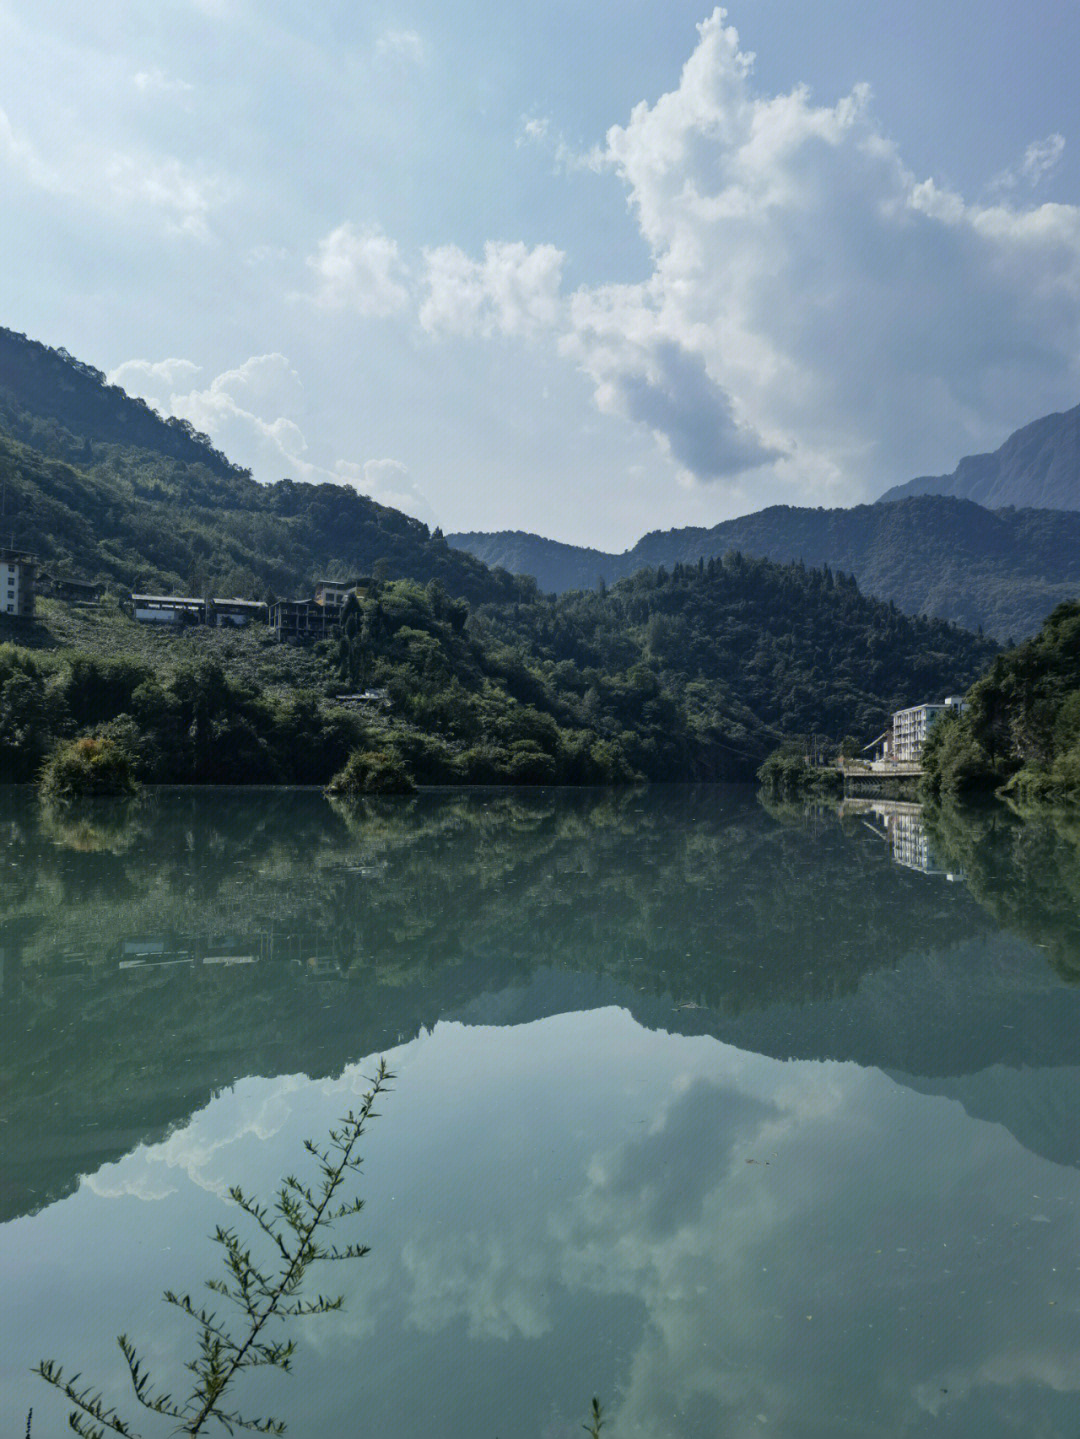 三江生态风景区门票图片